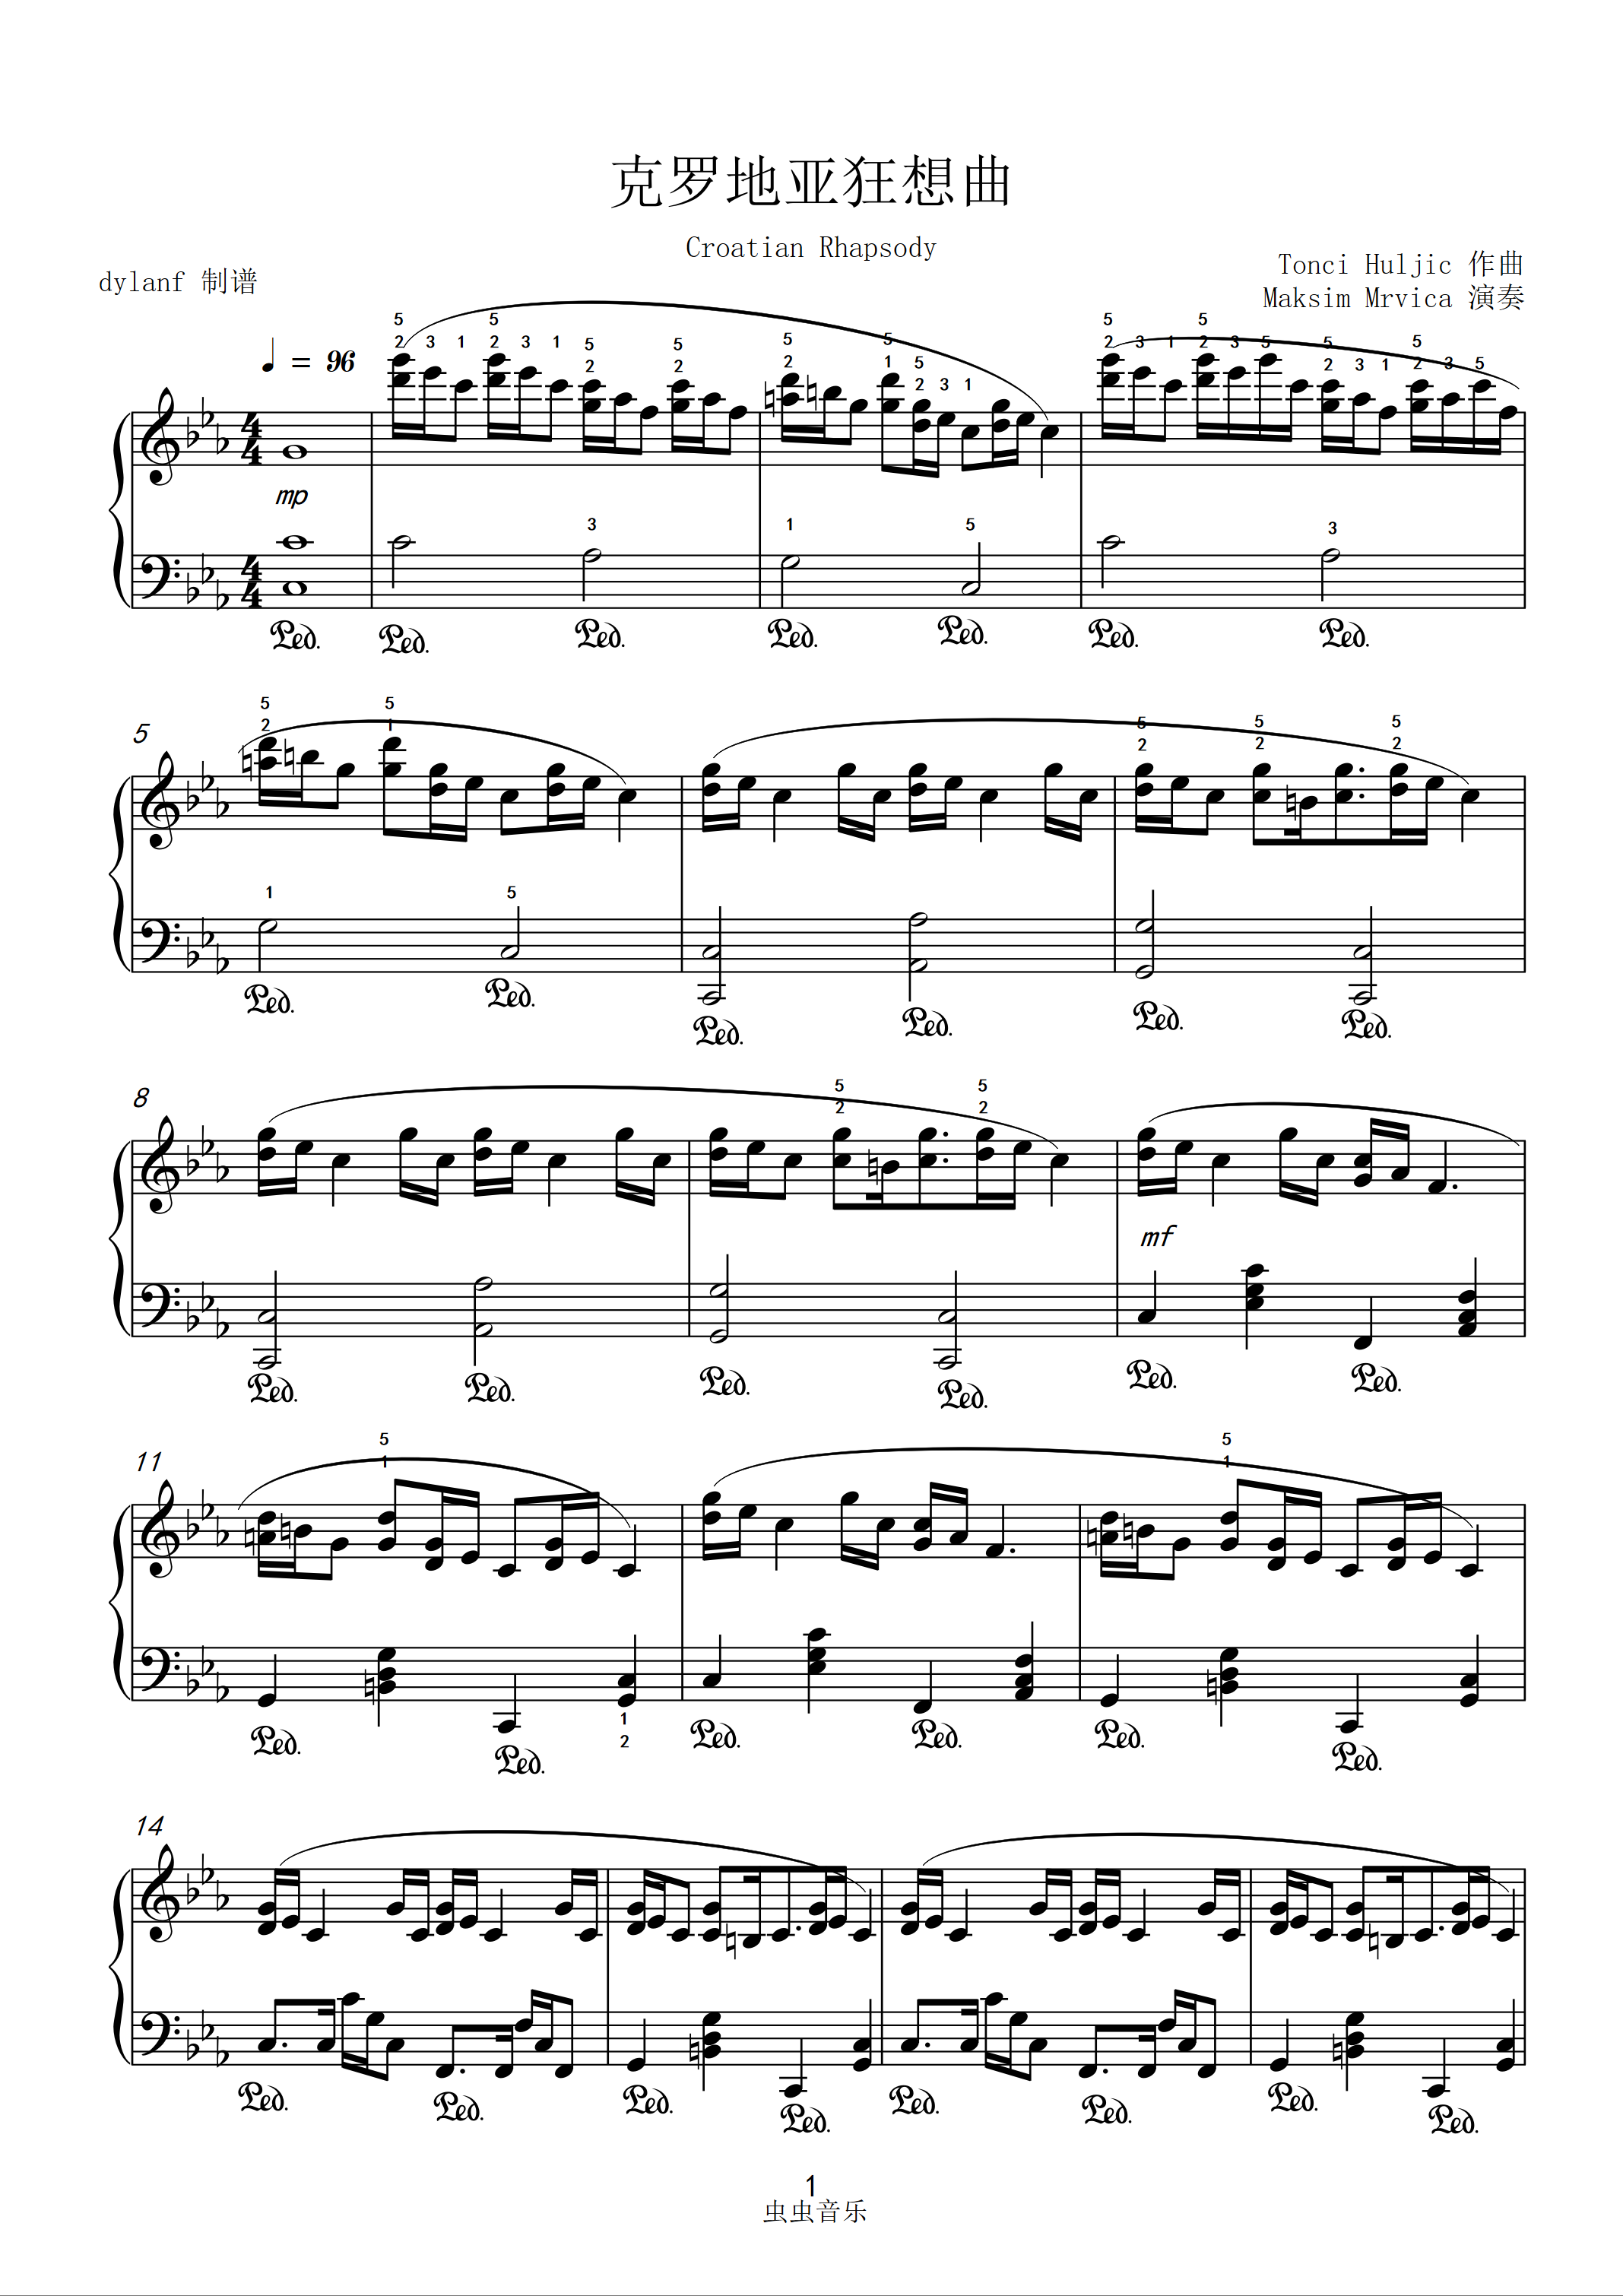 《克罗地亚狂想曲,钢琴谱》简化版,马克西姆（五线谱 钢琴曲 指法）-弹吧|蛐蛐钢琴网